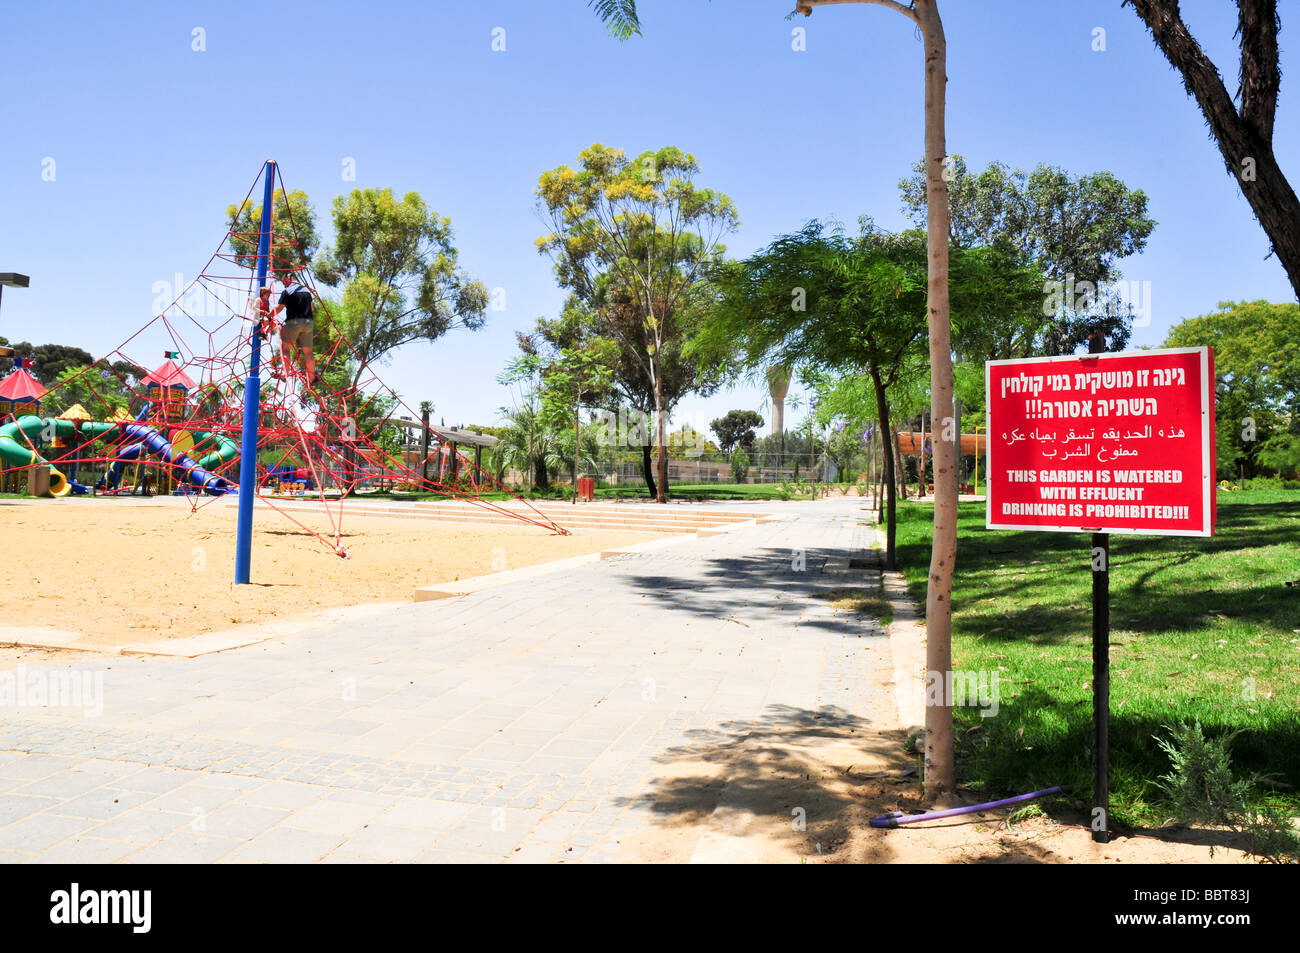 Un segnale di avvertimento in ebraico in arabo e in inglese questo giardino è irrigato con effluente potabile è vietato in un parco Foto Stock